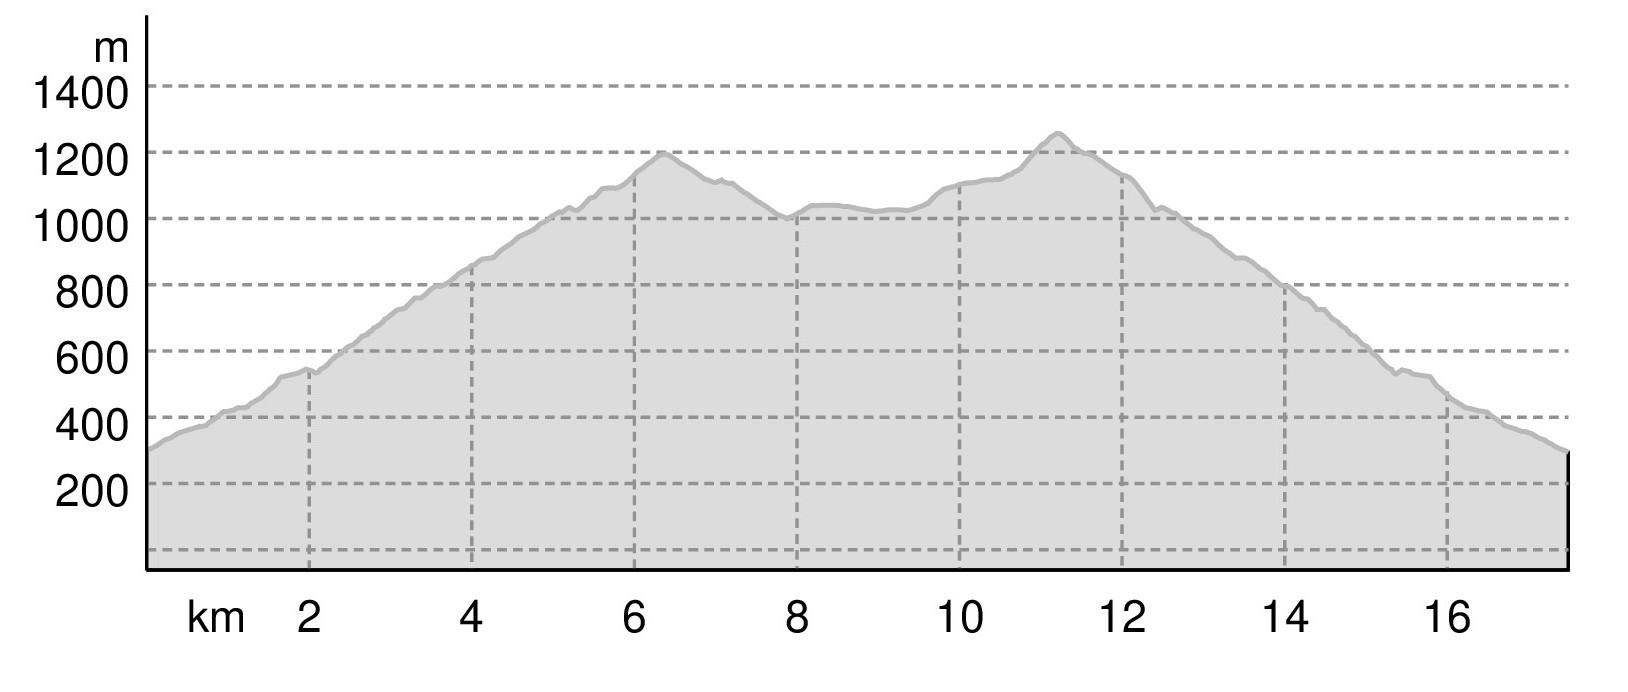 Profilo Altimetrico Millennium Trail Monte Gennaro - 2022